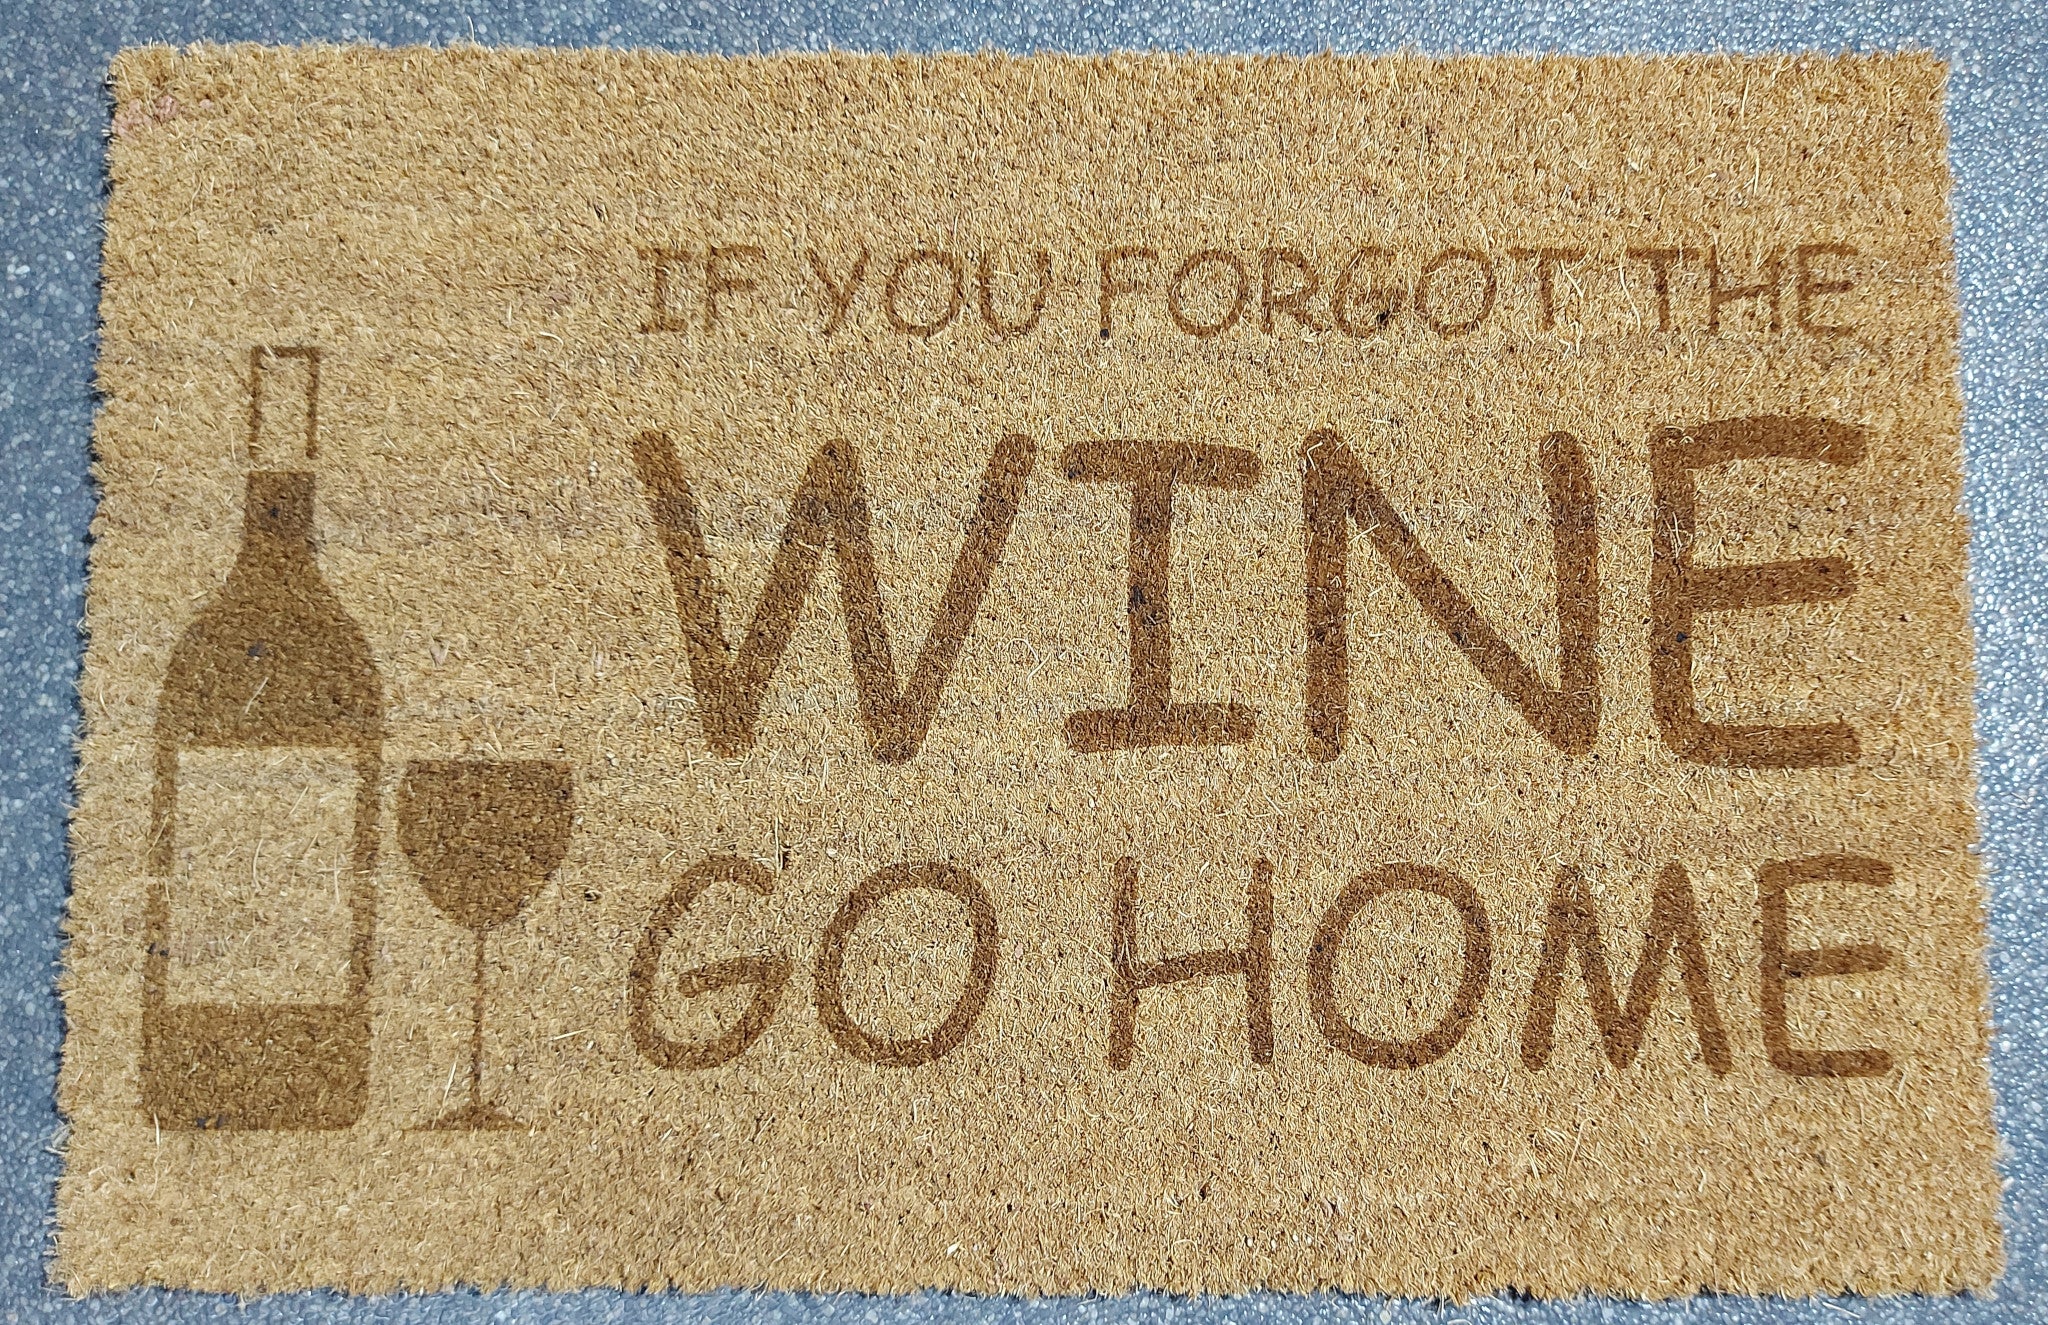 Kokos deurmat met gravure. Gravure 'If you forgot the wine, go home'.